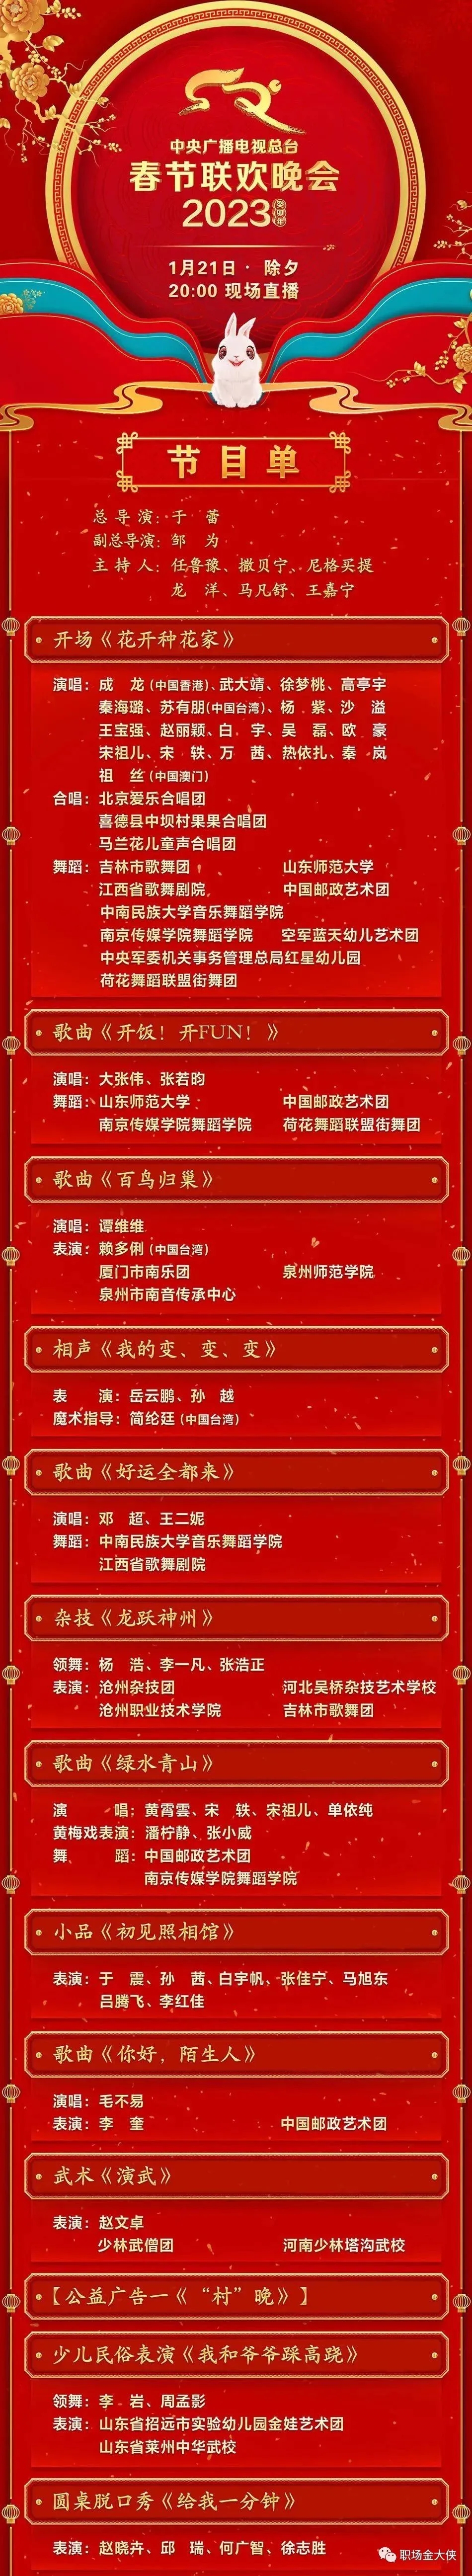 23年央视春晚节目单:宝强最忙;广智最值得期待;李谷一缺席遗憾